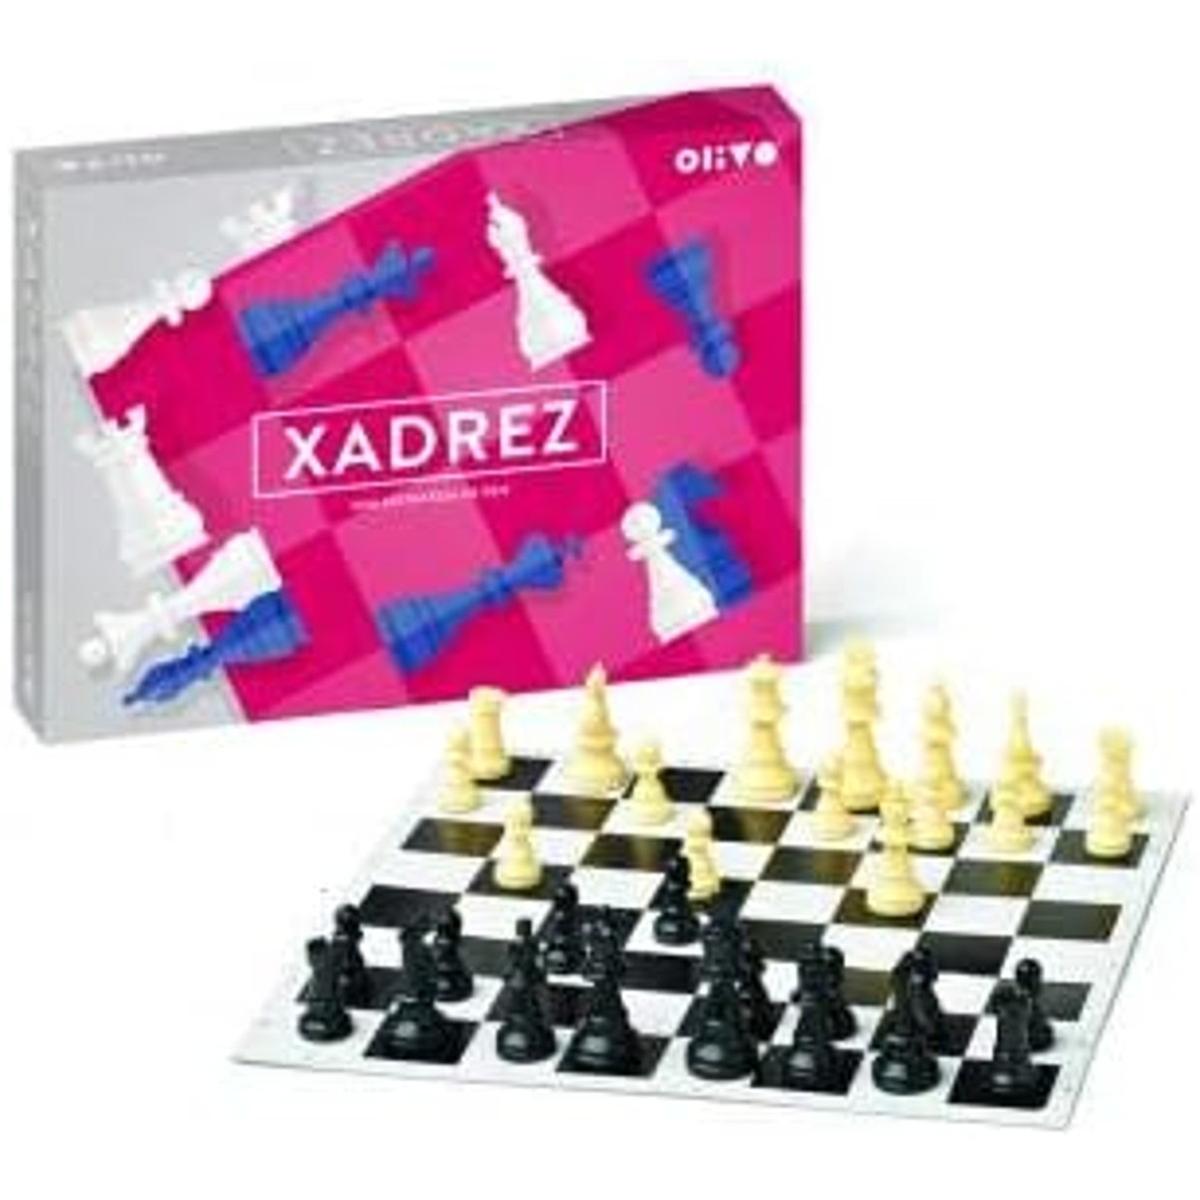 Jogo de Xadrez - compre jogo educativos em promocao - Marvic